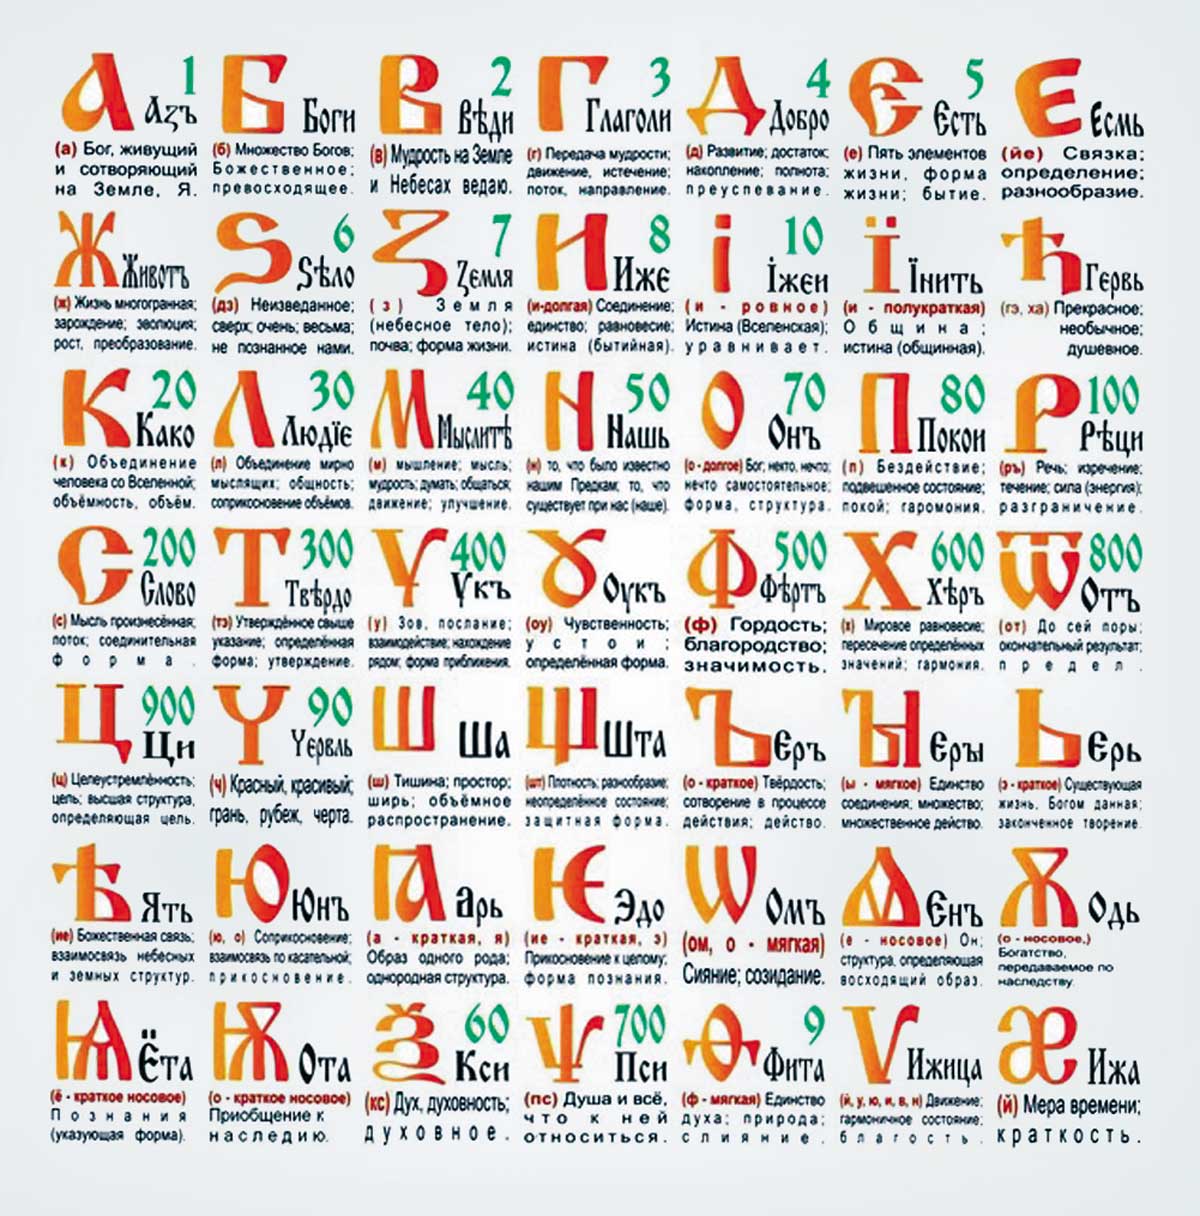 История упрощения славянской азбуки (2)